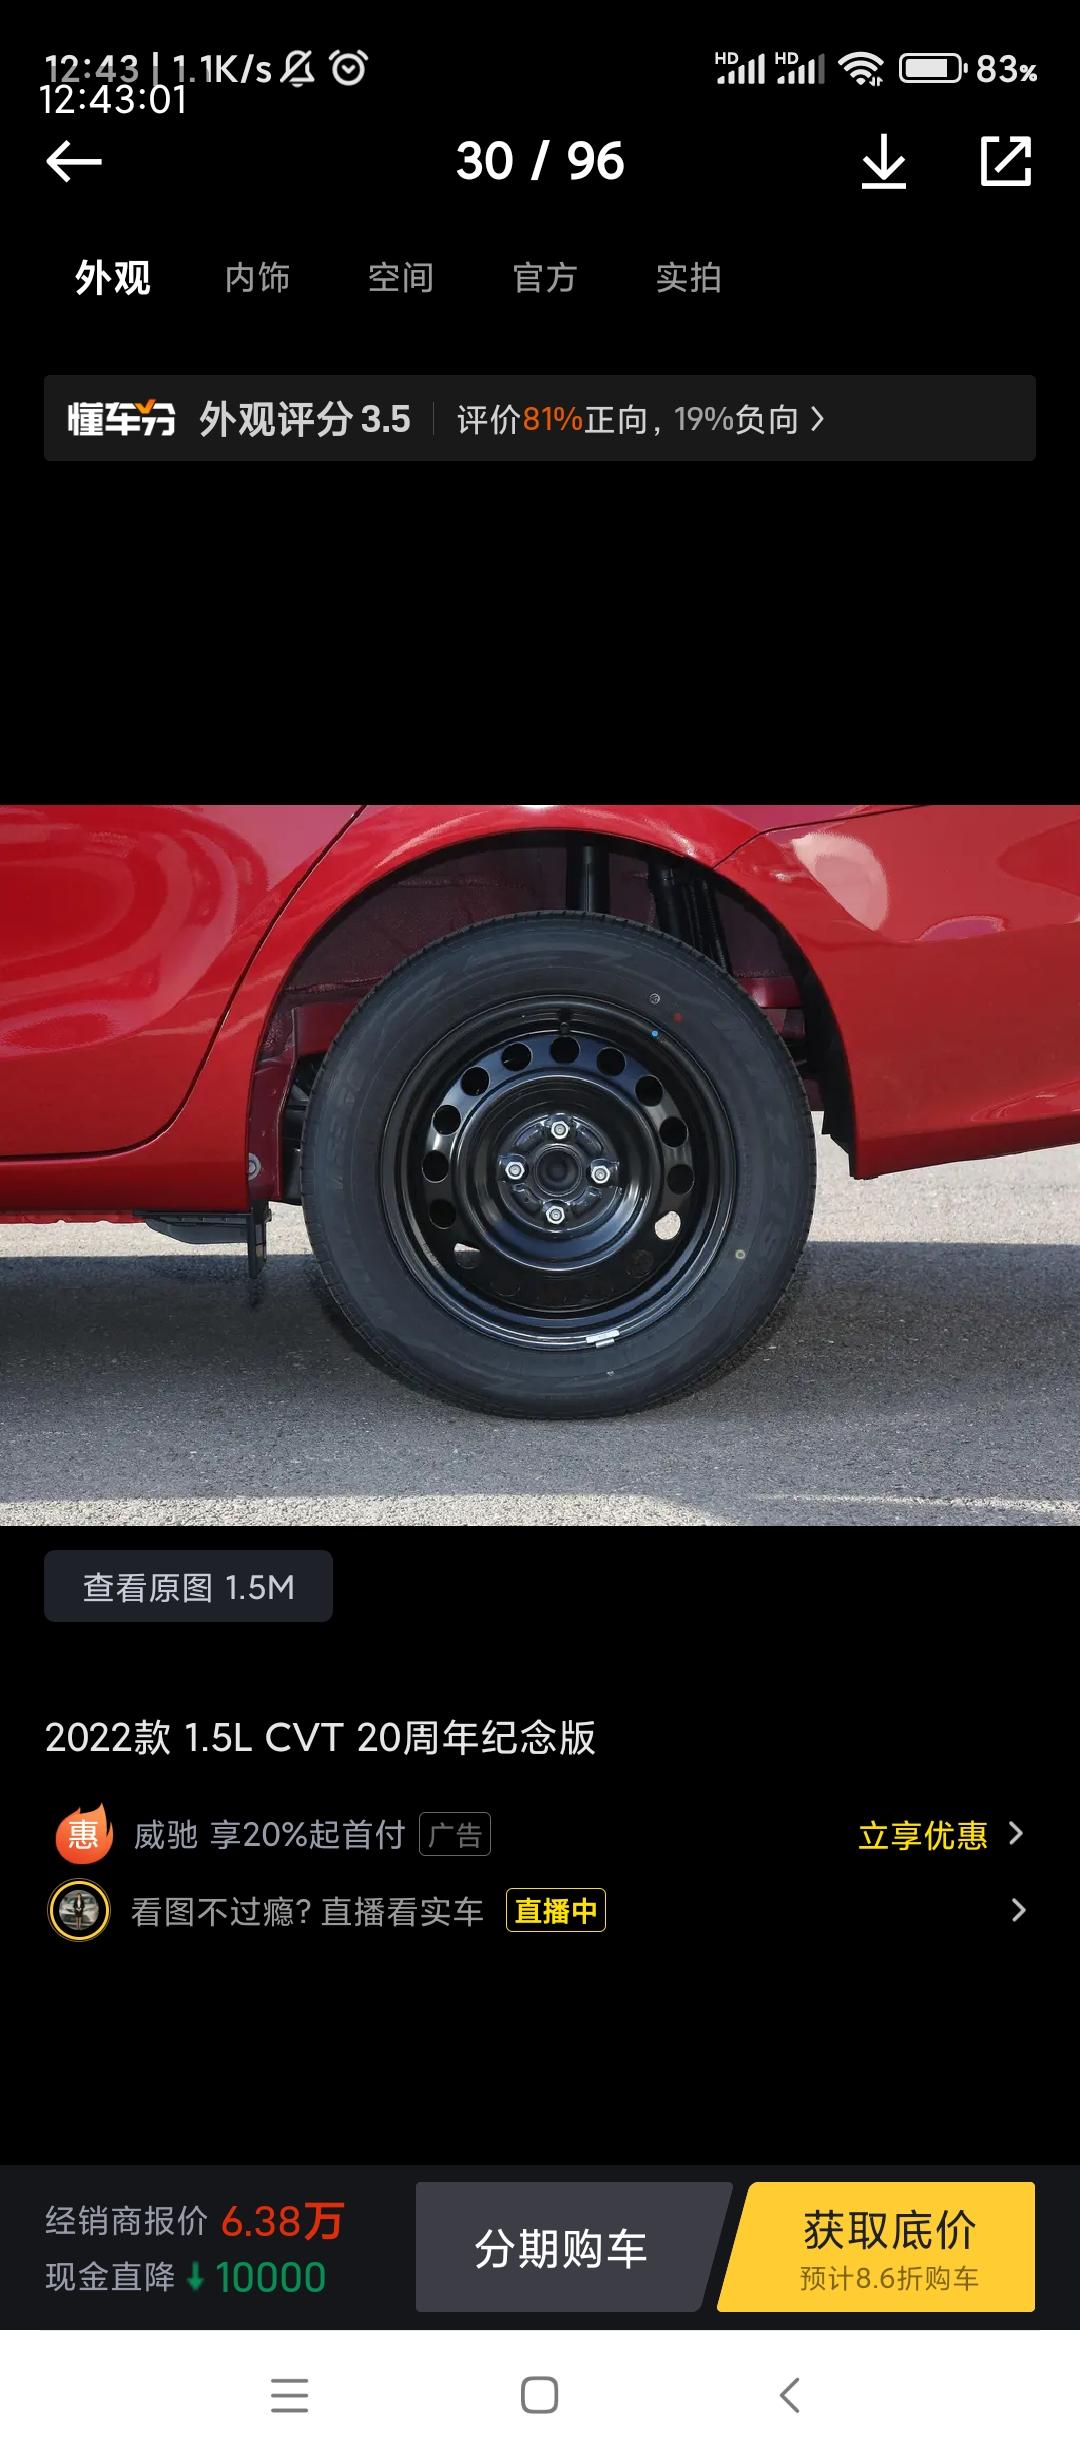 丰田威驰 20周年真是这种轮毂吗，好土啊，一看就是乞丐车，像备胎一样